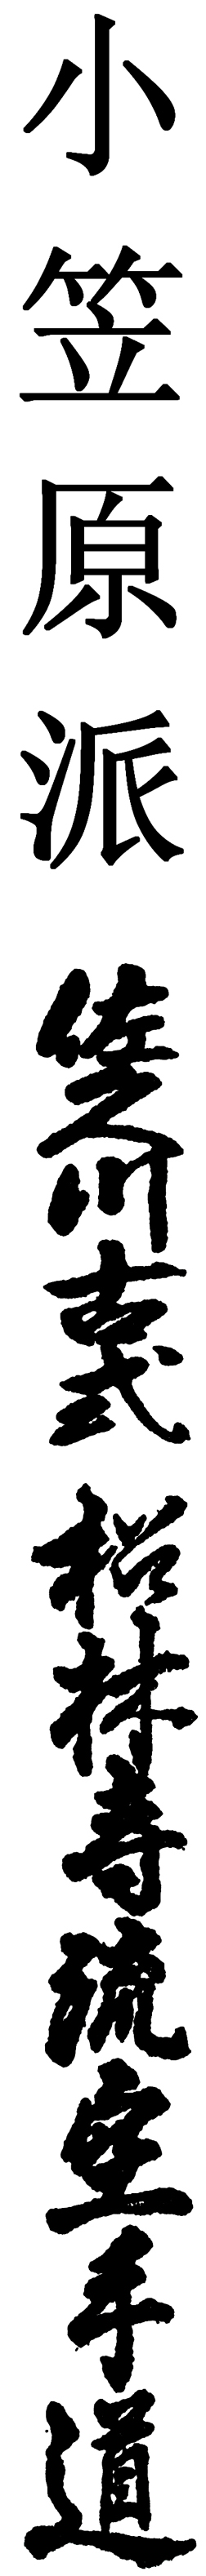 Kanji for Ogasawara-Ha & Sakugawa Koshiki Shorinji-Ryu Karatedo